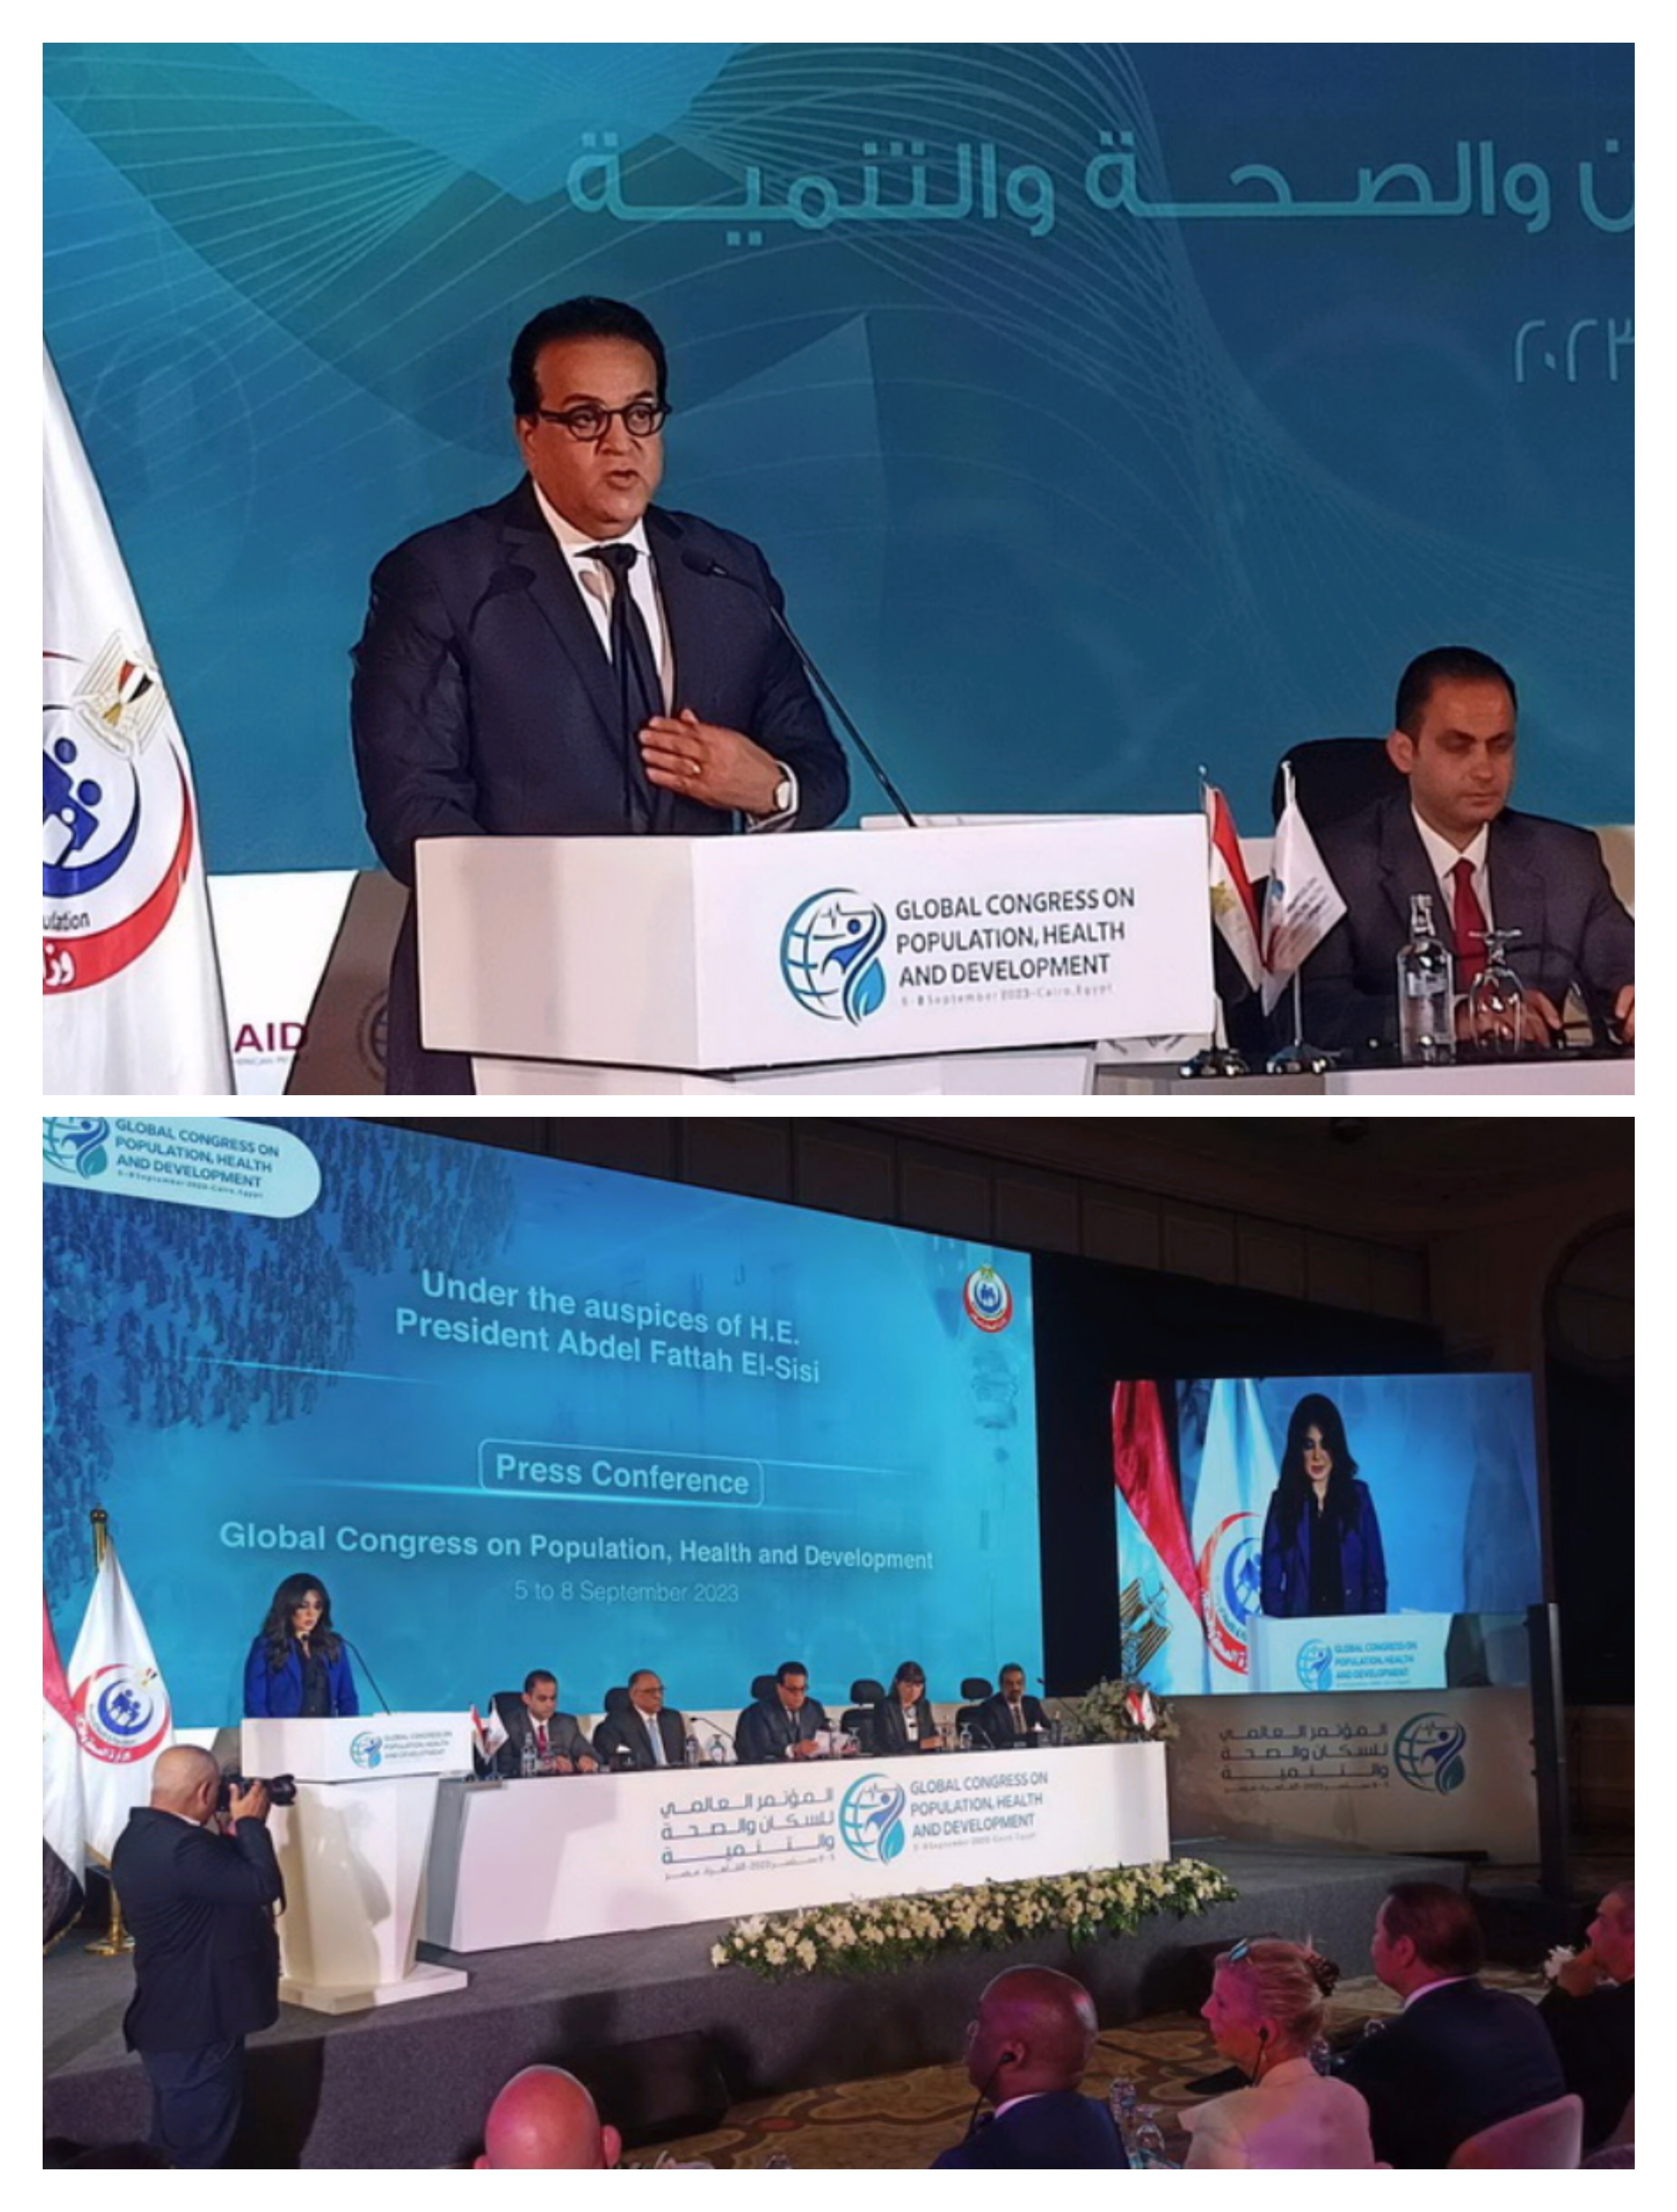 مصر تعلن عن تنظيم مؤتمر دولى  بمشاركة صانعى القرار  فى قضايا السكان والصحة والتنمية